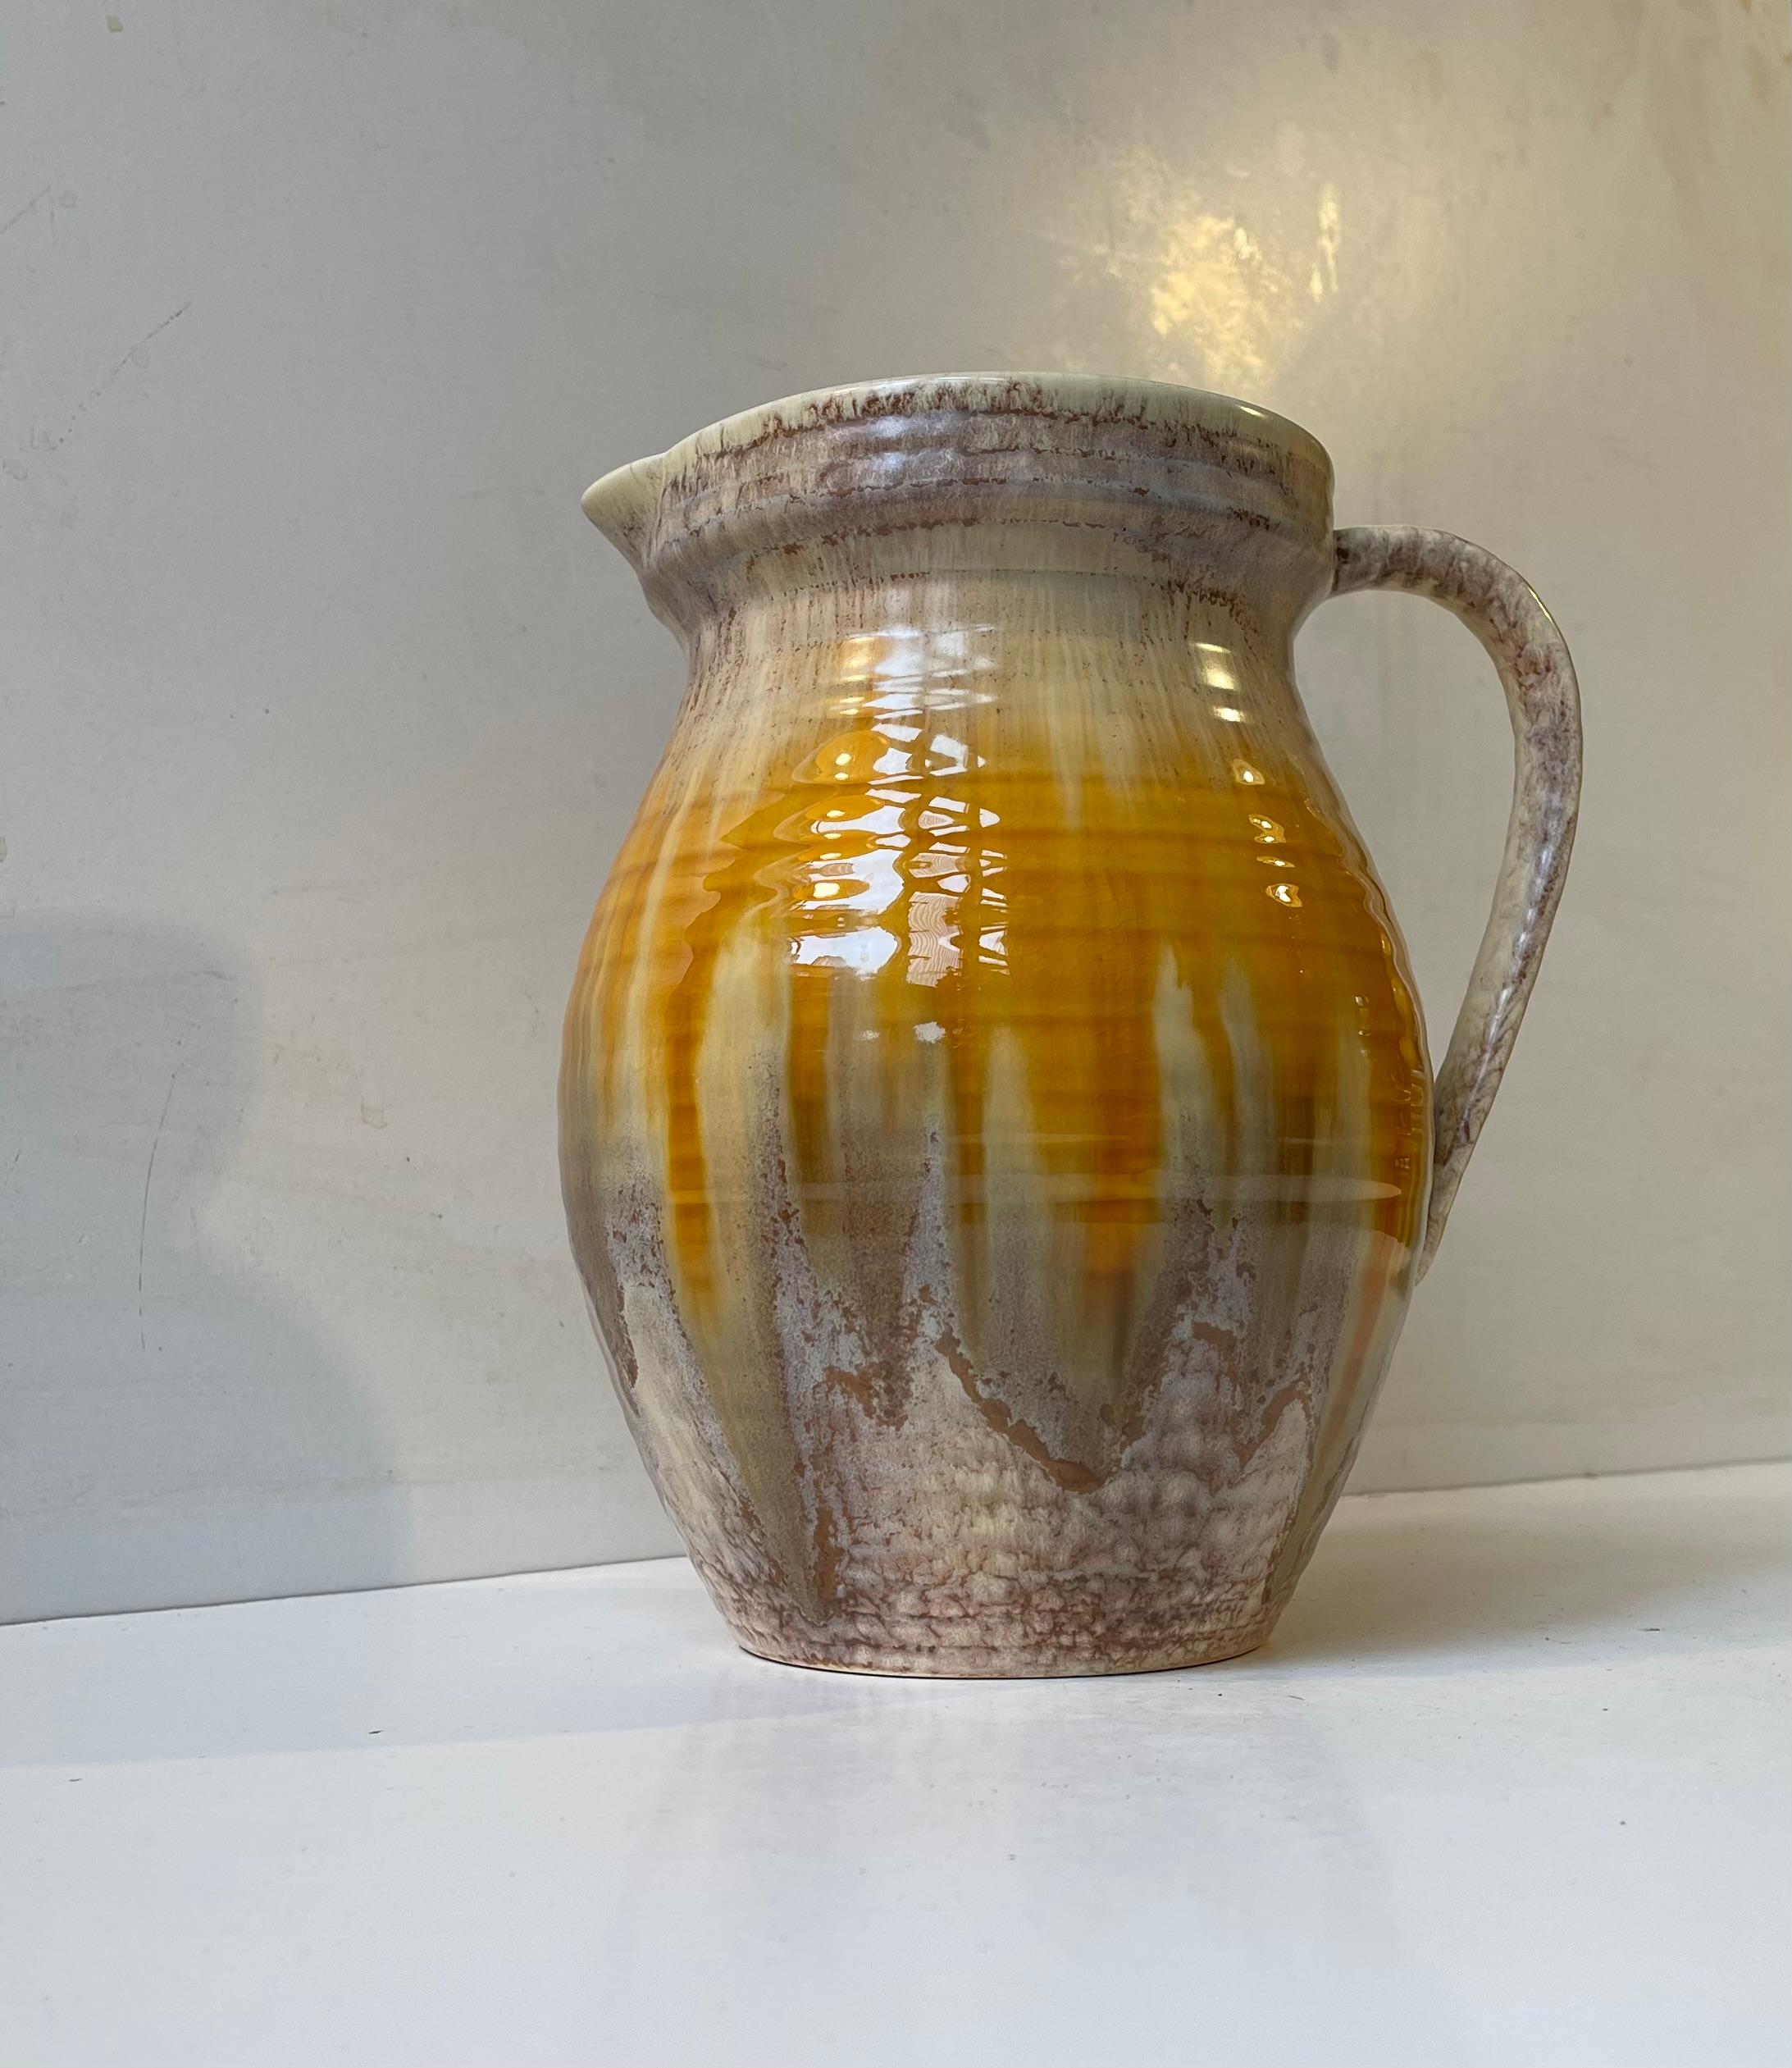 Une étonnante cruche en poterie presque monumentale provenant de Sylvac, en Angleterre. Ce Design/One 1410 date des années 1930 et présente des glaçures brunes et jaunes délicates à la texture osseuse. Une belle pièce ornementale pour les intérieurs